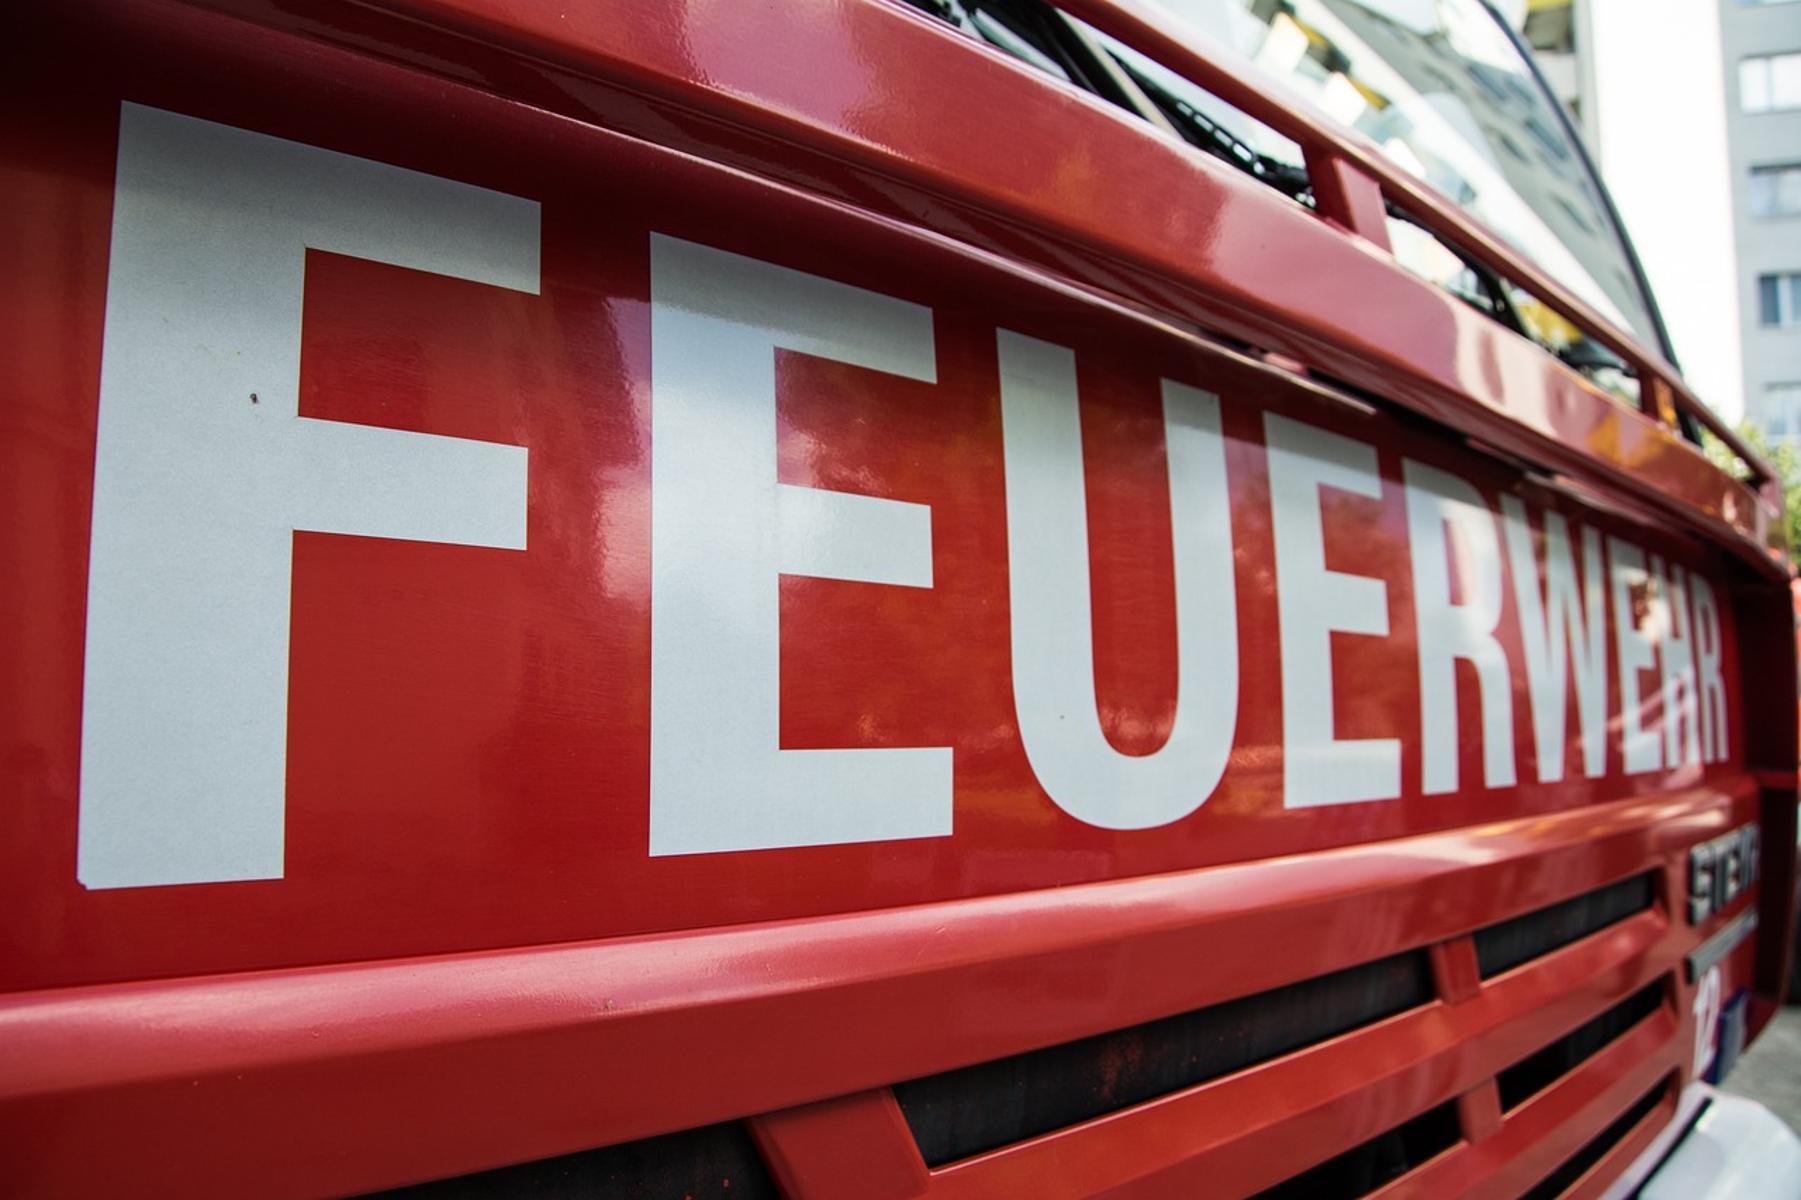 MAI-FIRE heißt die Mai-Feier der Freiwilligen Feuerwehr in Eppertshausen. Sie findet am 30. April in der Bürgerhalle Eppertshausen statt.
                 title=